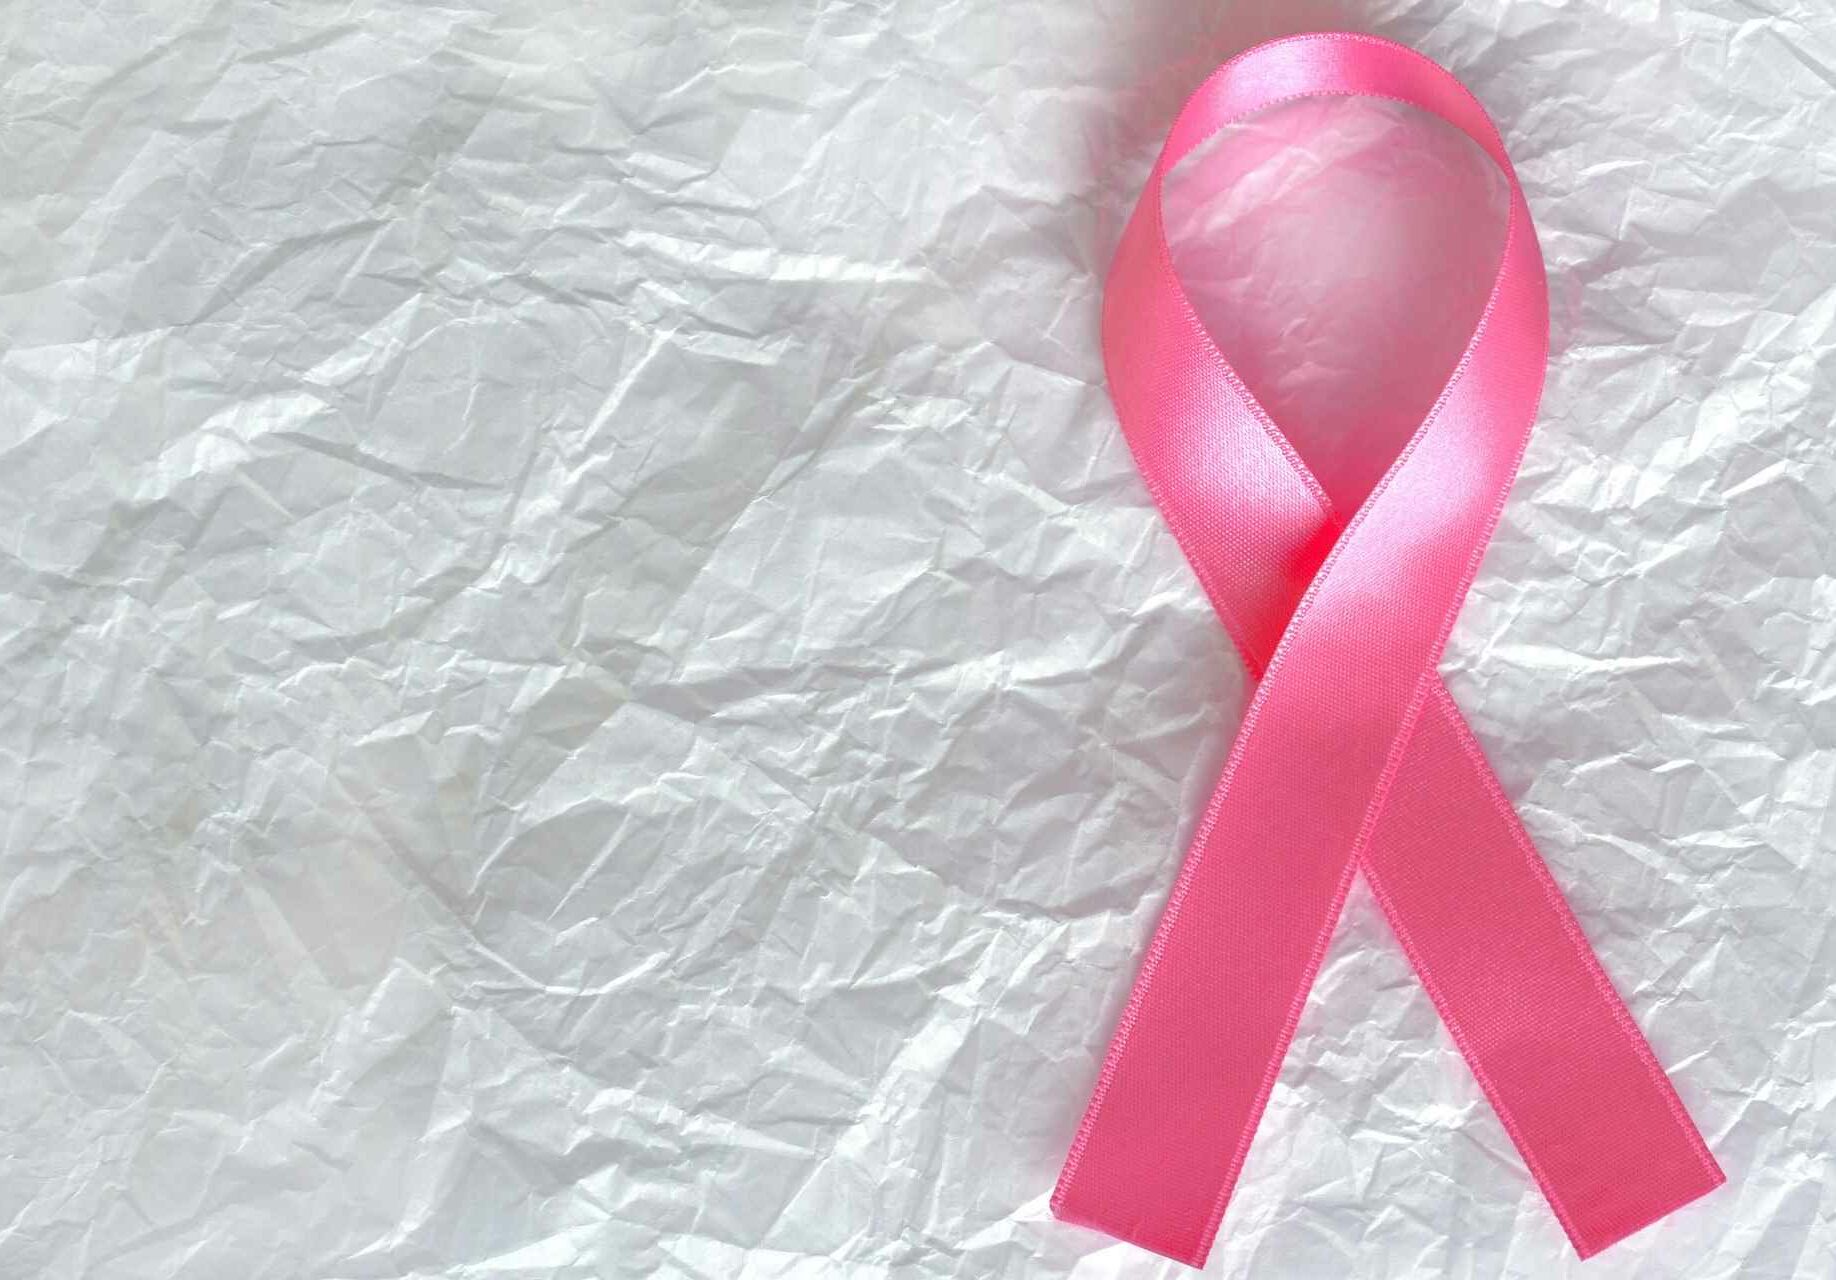 Dessous für Brustkrebspatientinnen